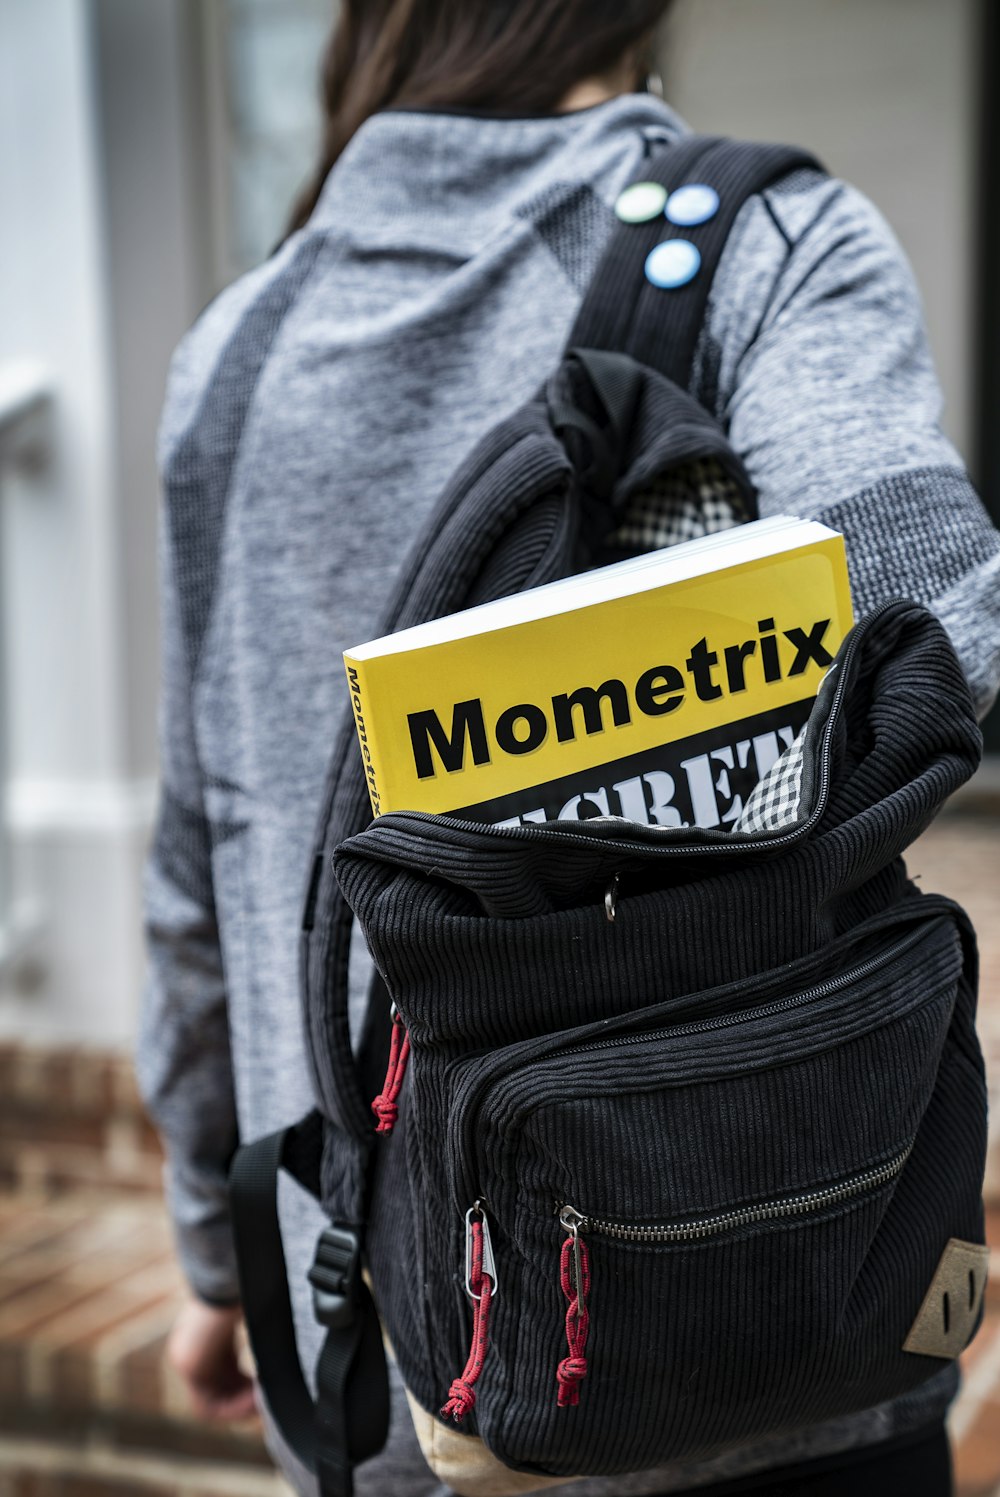 Livro Mometrix dentro da mochila preta